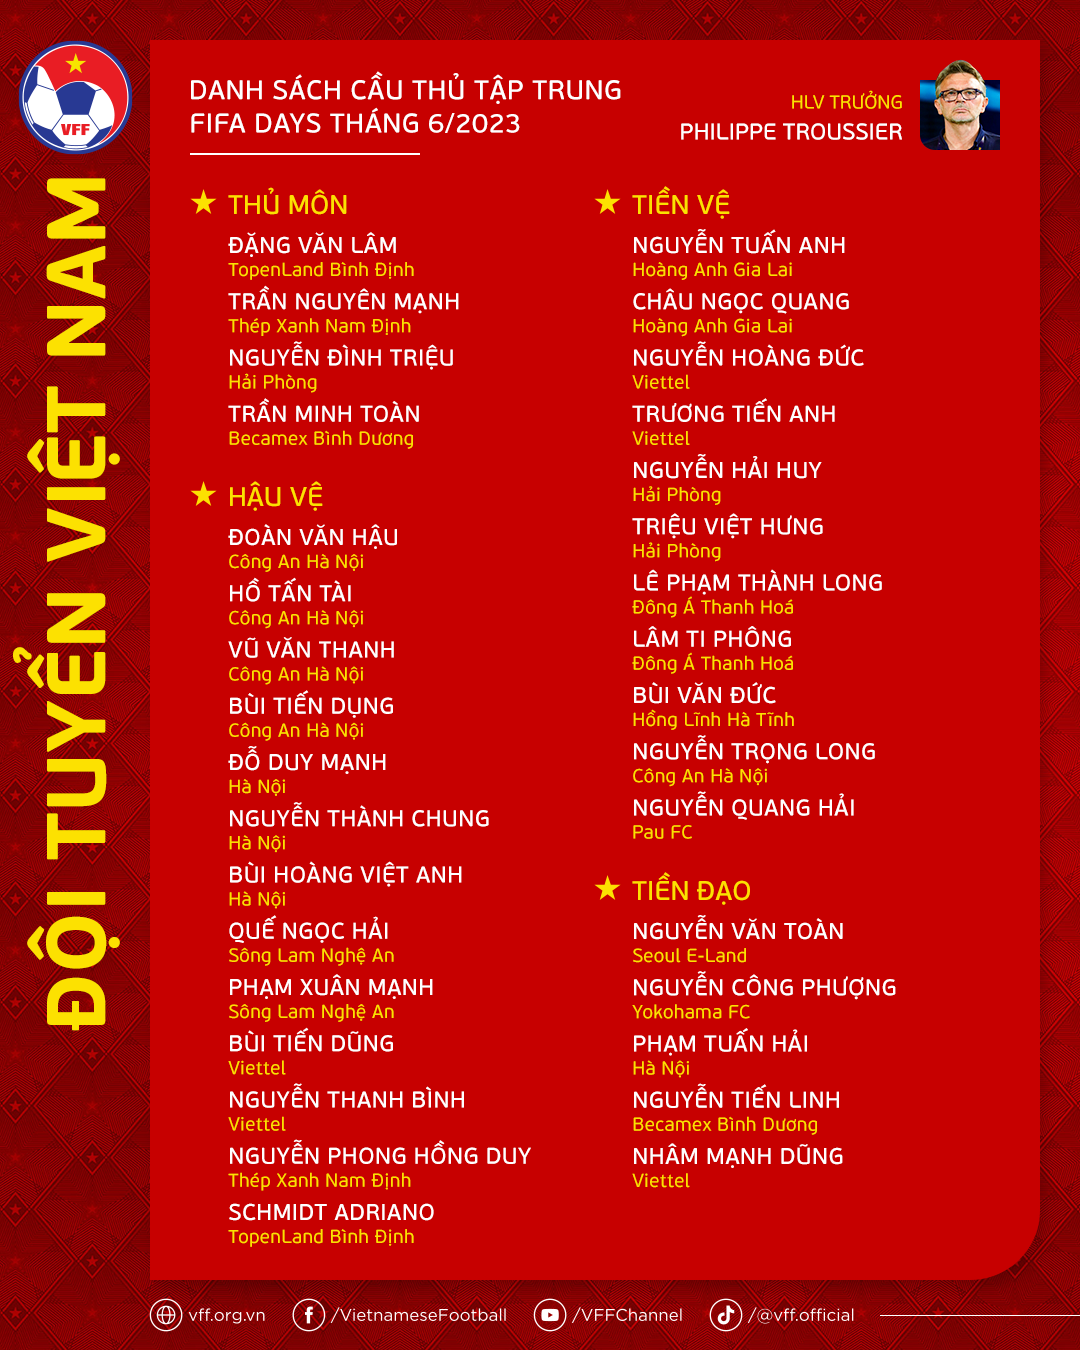 Danh sách đội tuyển Việt Nam: HLV Troussier giữ Công Phượng, Quang Hải, gọi nhiều cầu thủ mới - Ảnh 1.